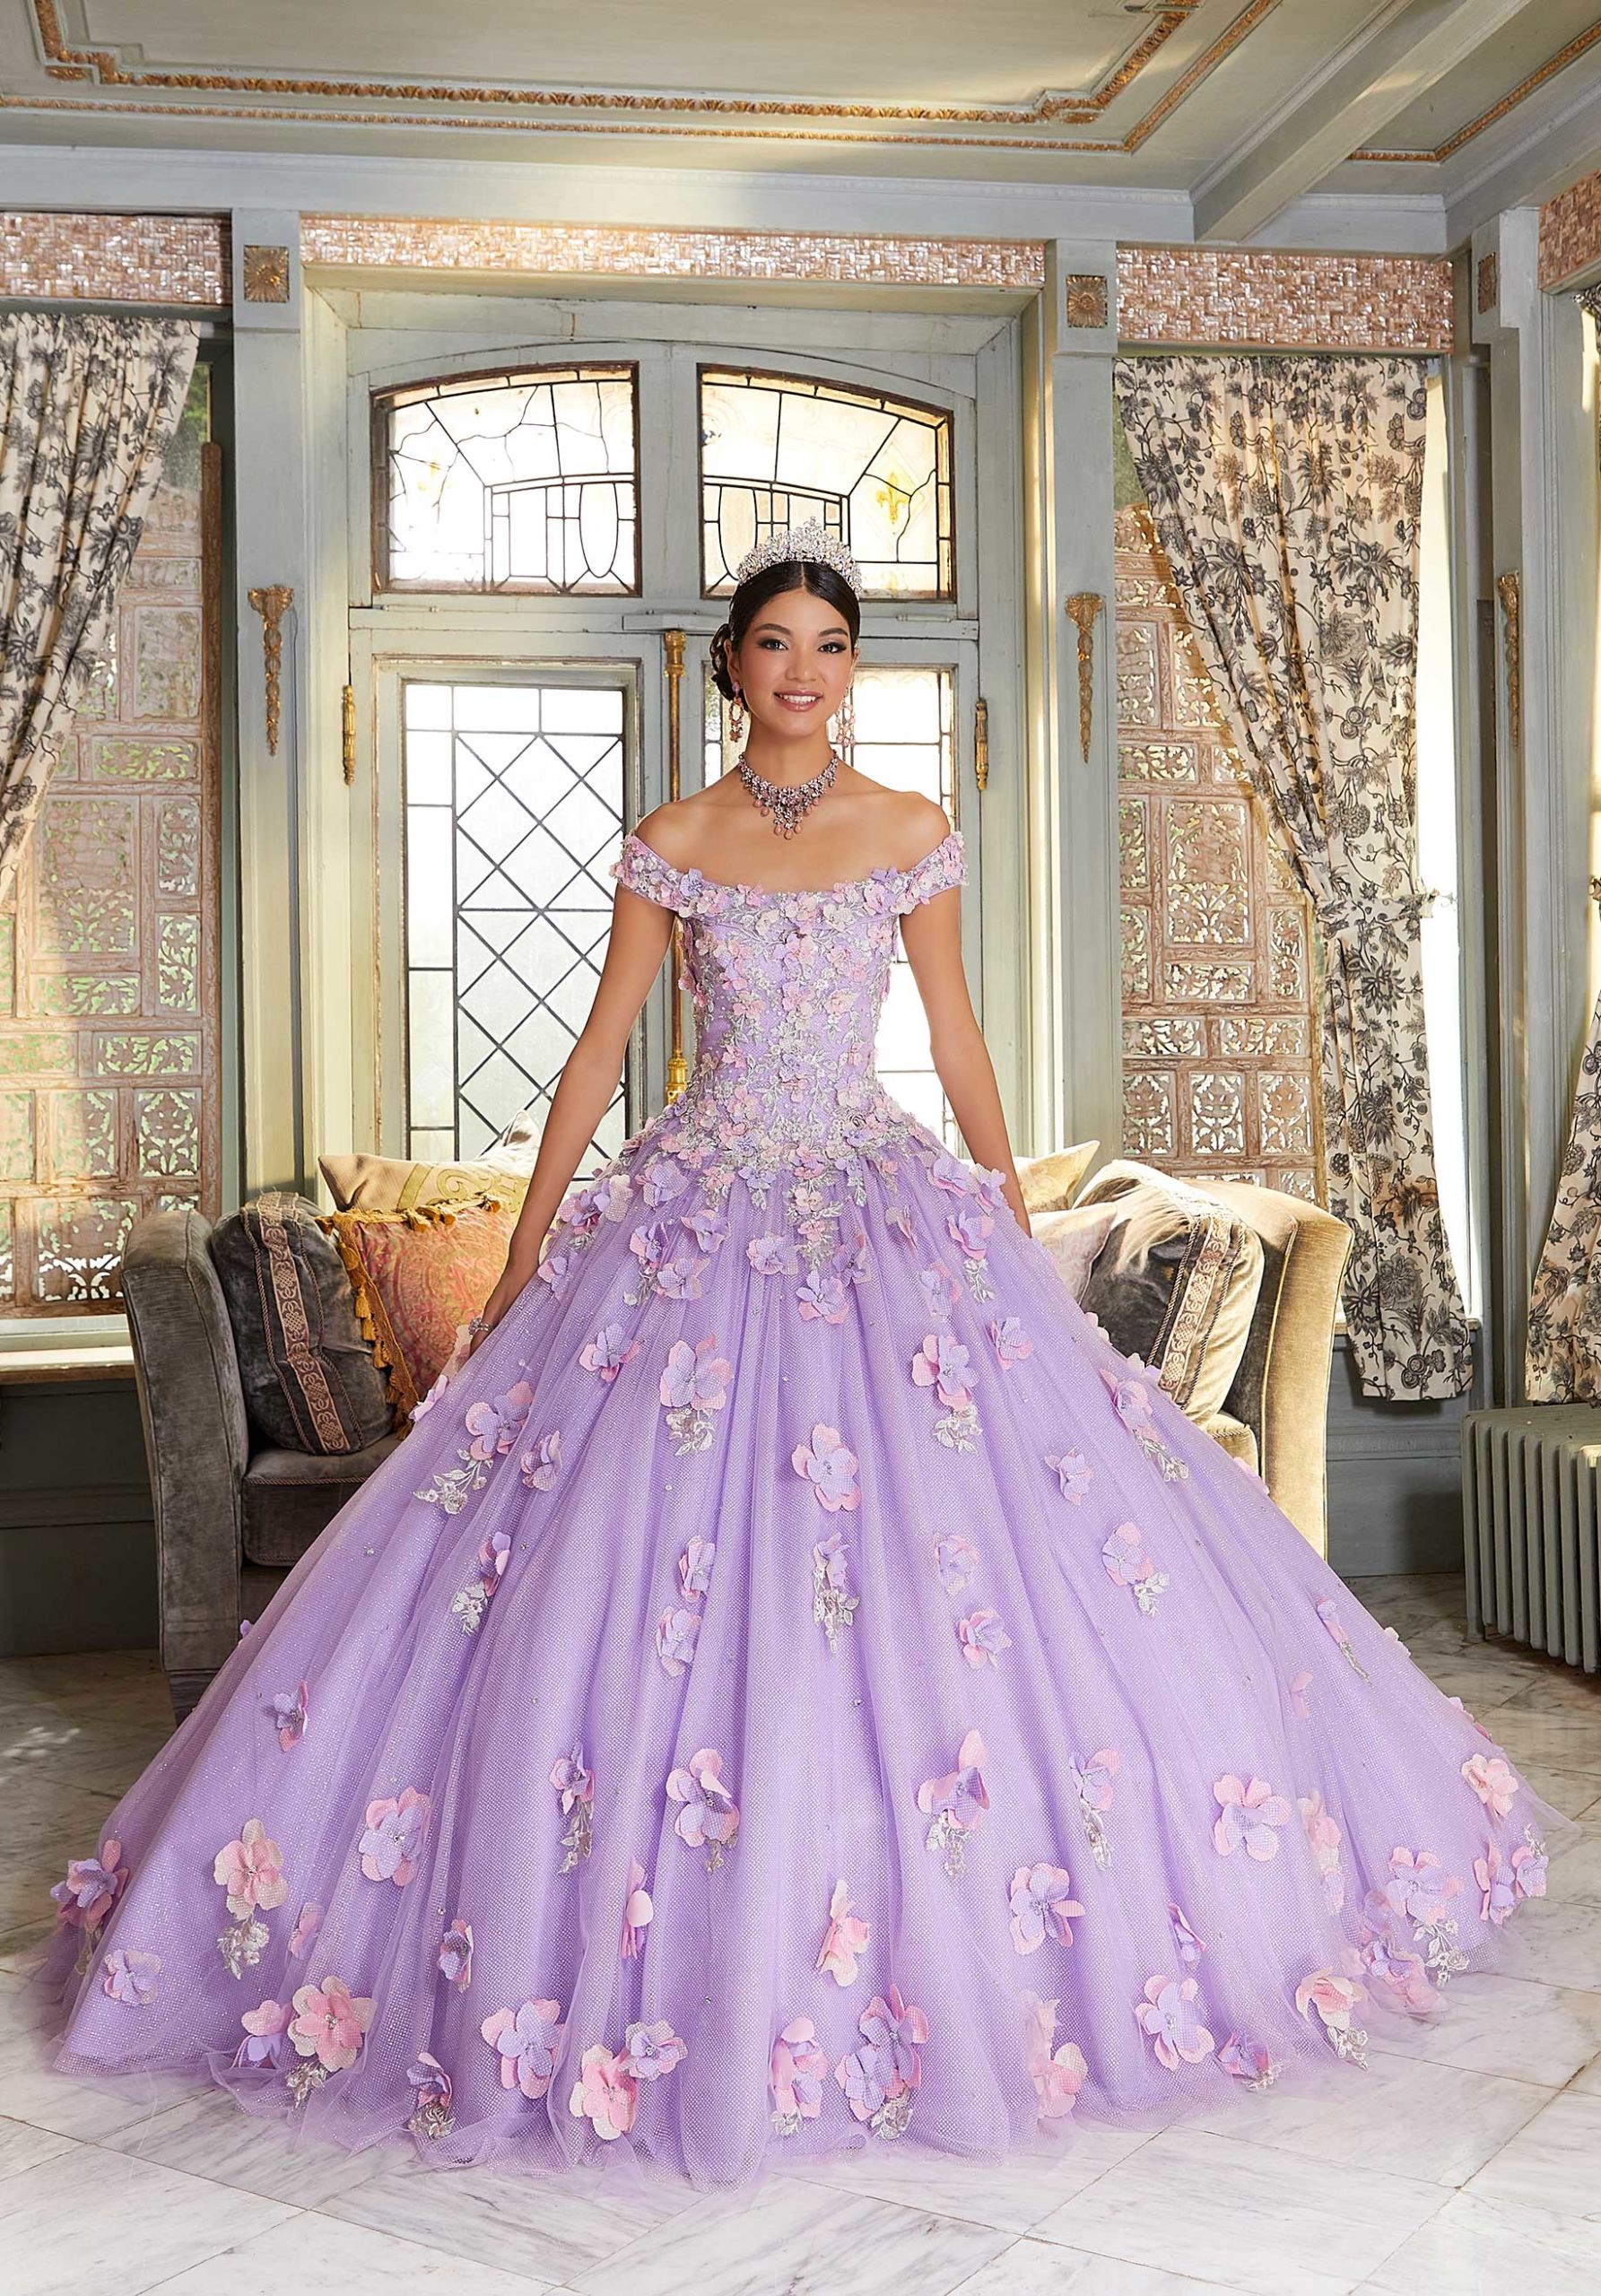 Multi-Colored Floral Quinceañera Dress